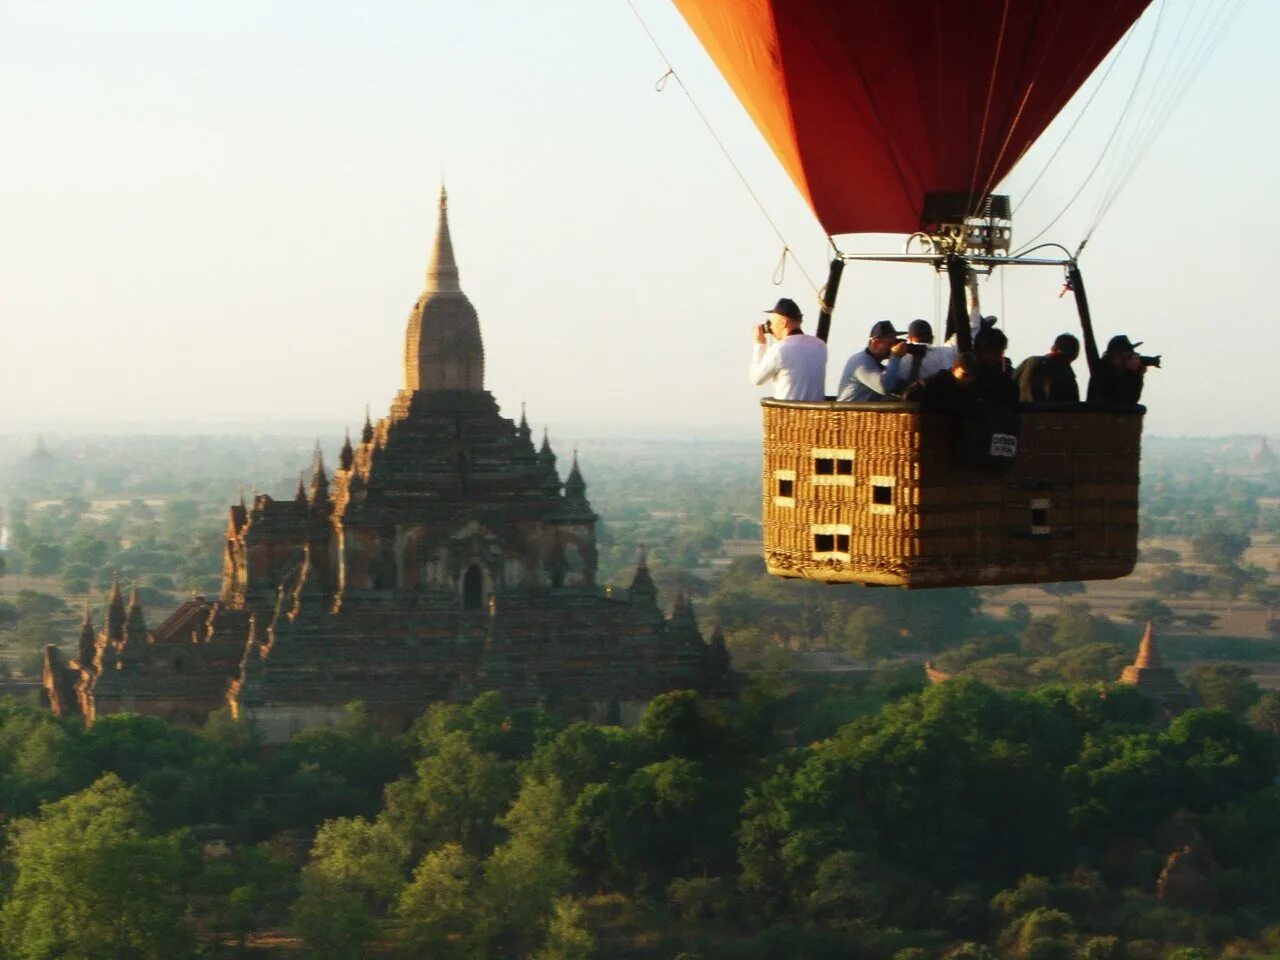 Поездка на шаре. Ангкор ват на воздушном шаре. Путешествие на воздушном шаре. Воздушный шар путешествие. Воздушное путешествие.